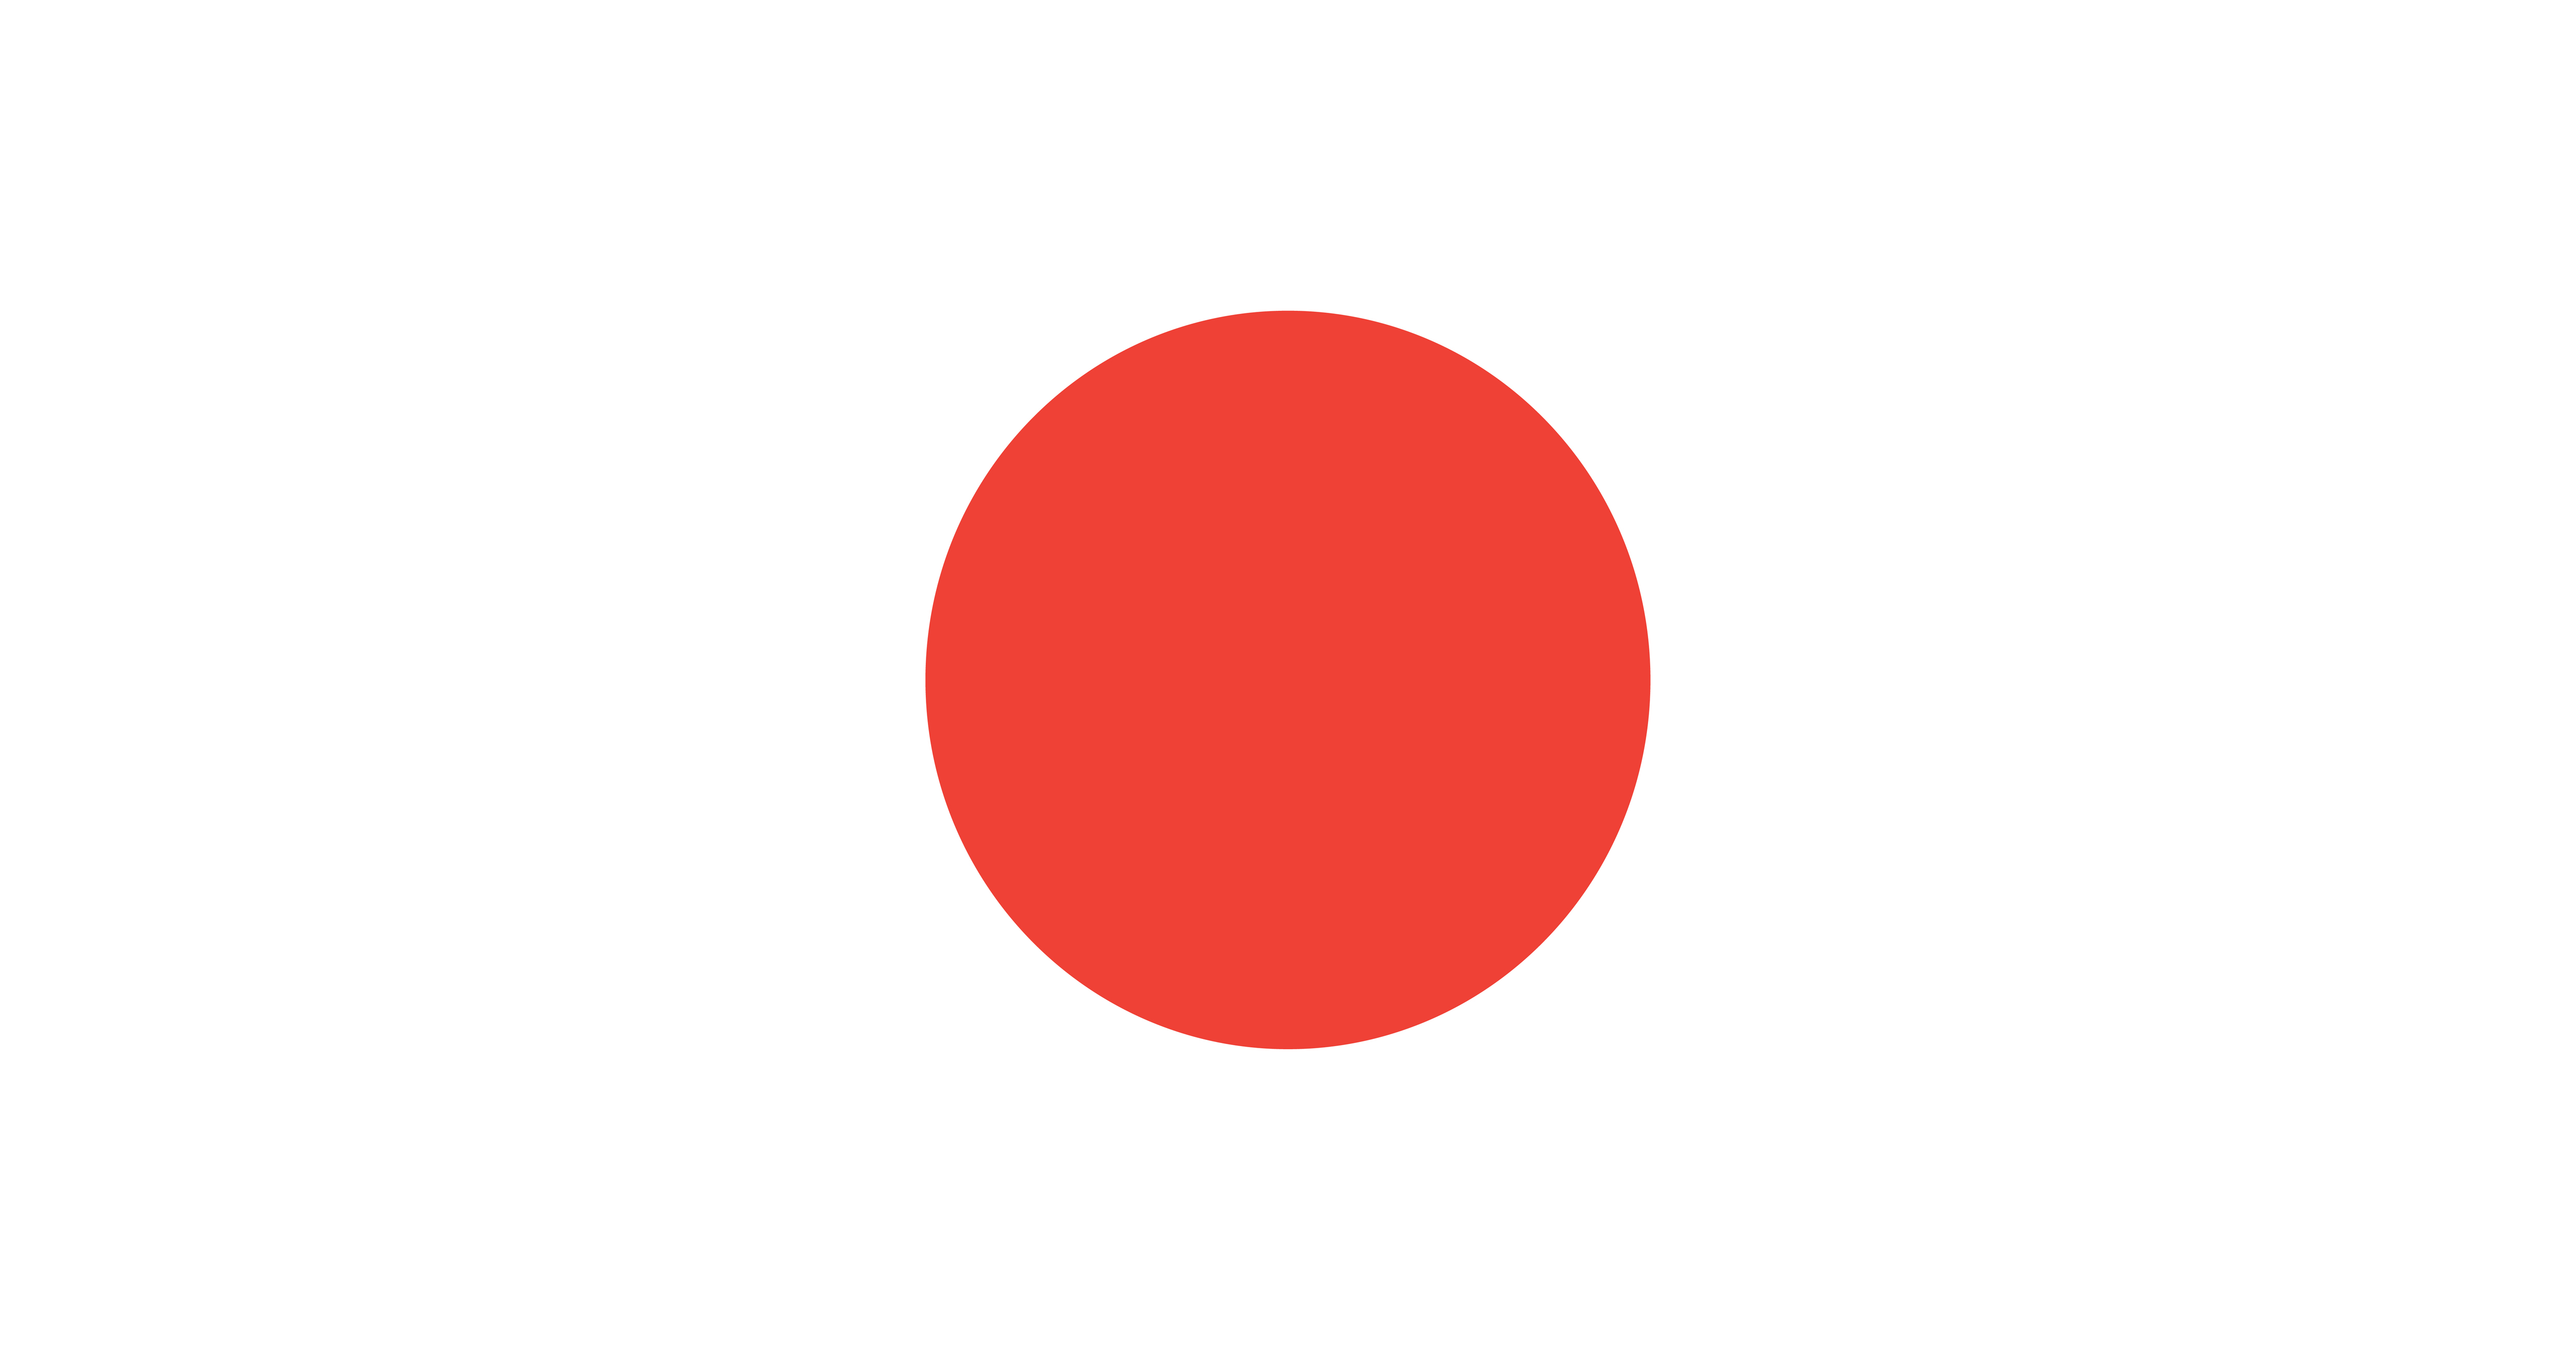 Download Illustration of Japan flag - Download Free Vectors ...